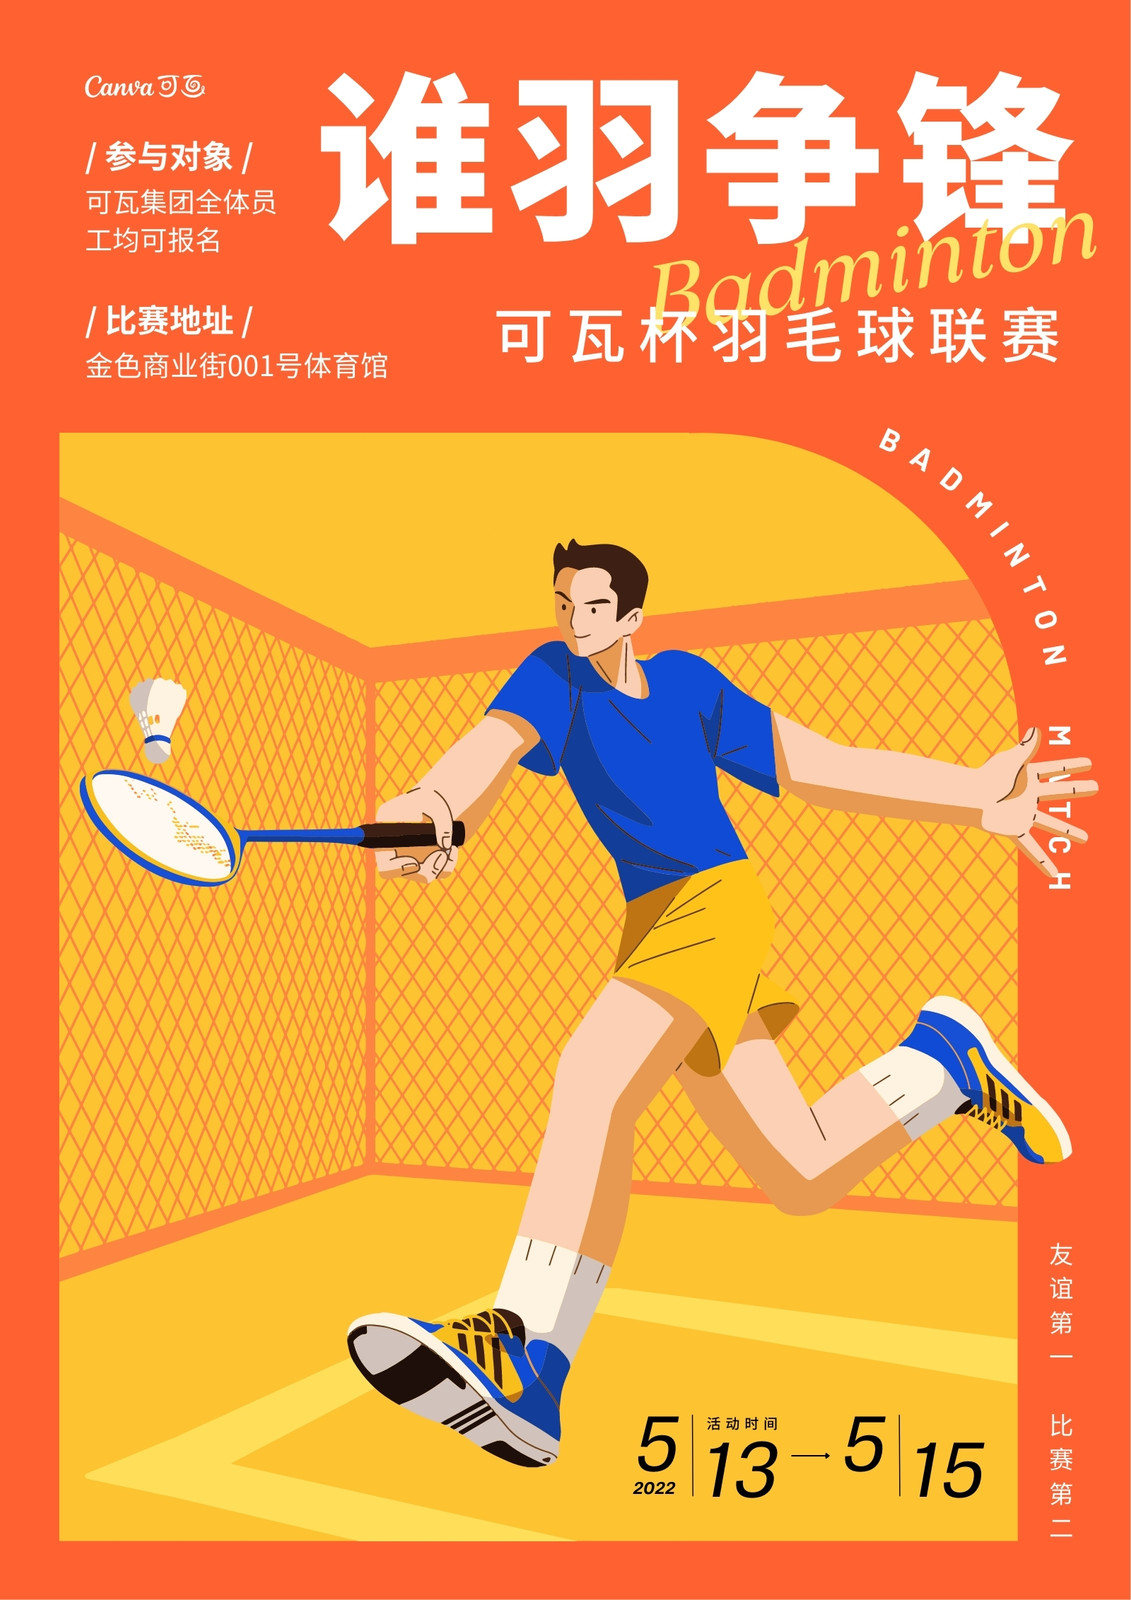 橙黄色羽毛球打球球场比赛运动健身活动手绘运动健身宣传中文海报 模板 Canva可画